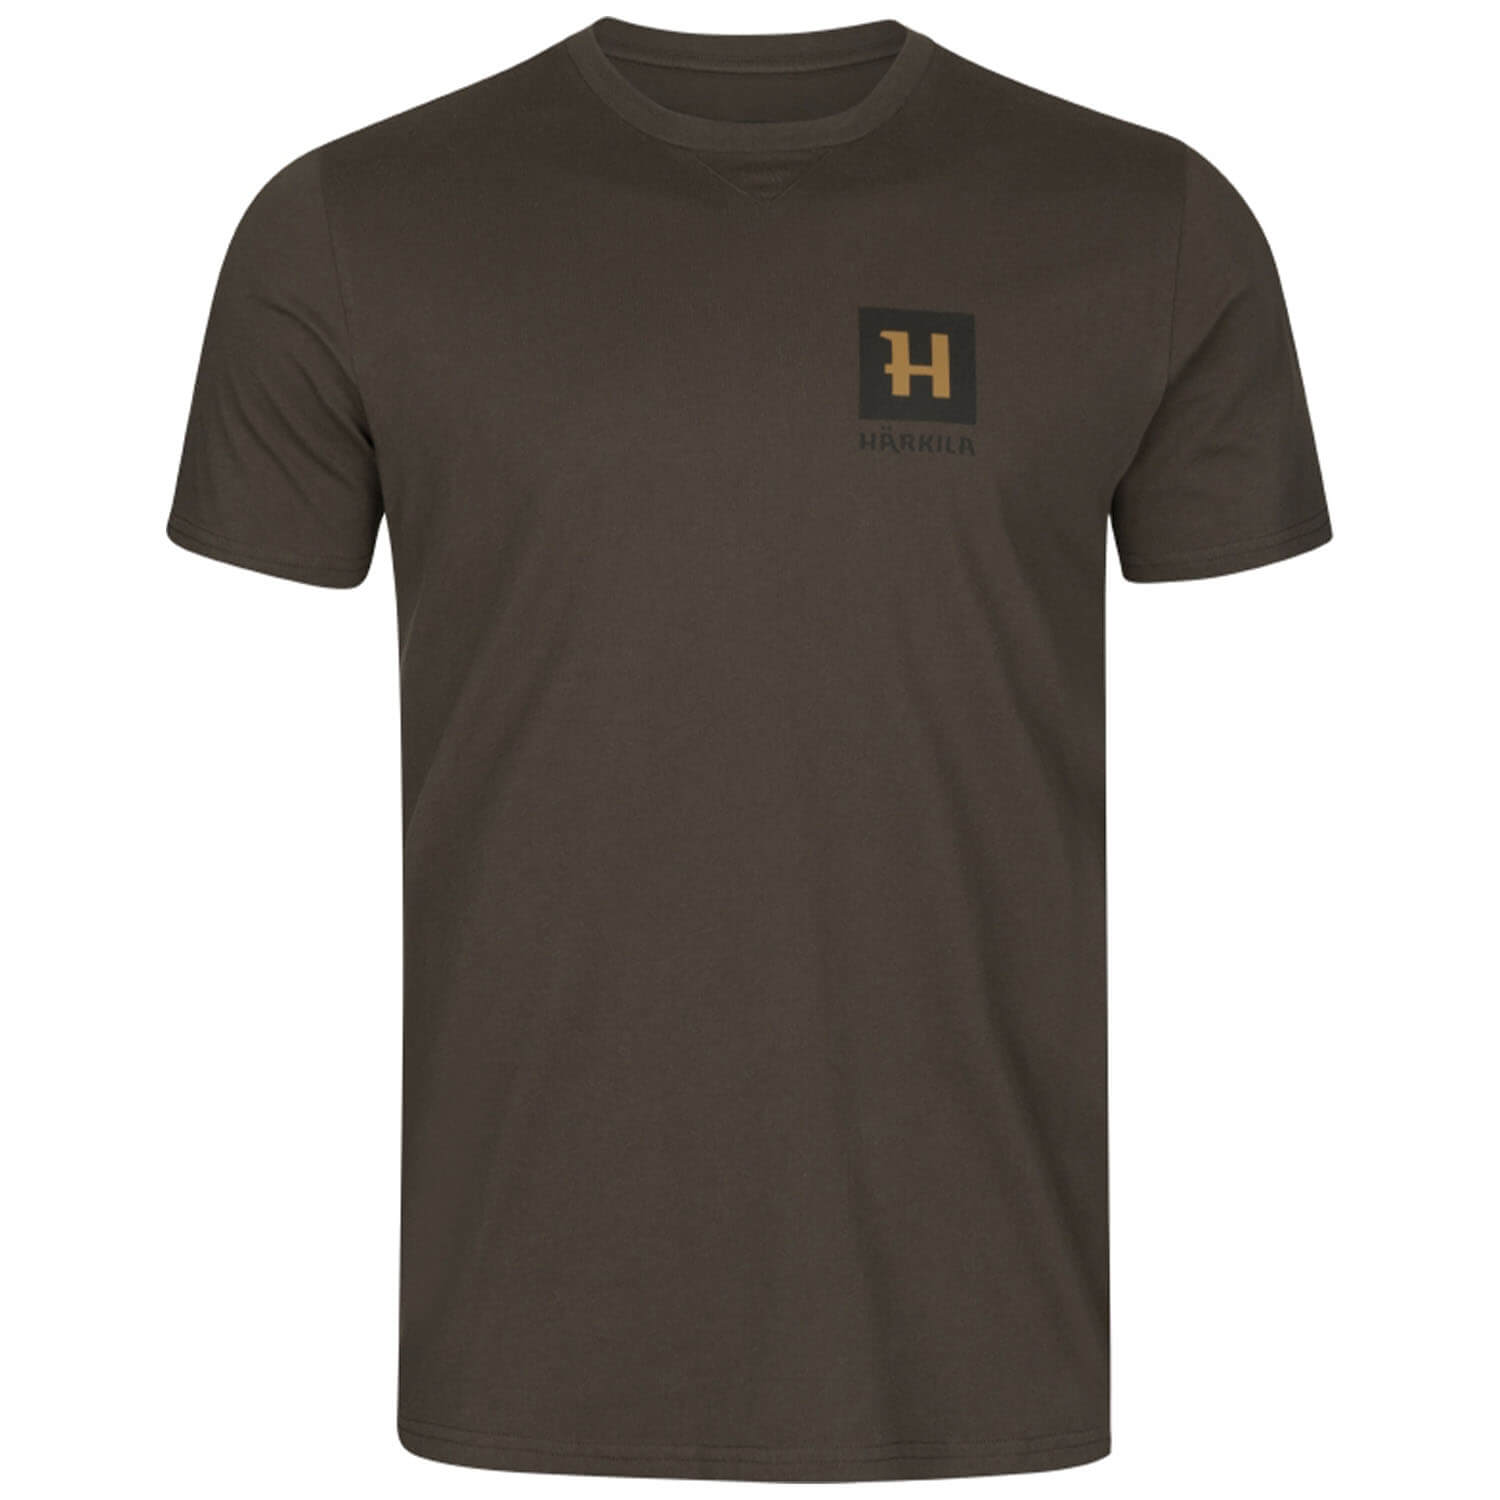  Härkila T-shirt Gorm (Shadow Brown) - T-Shirts